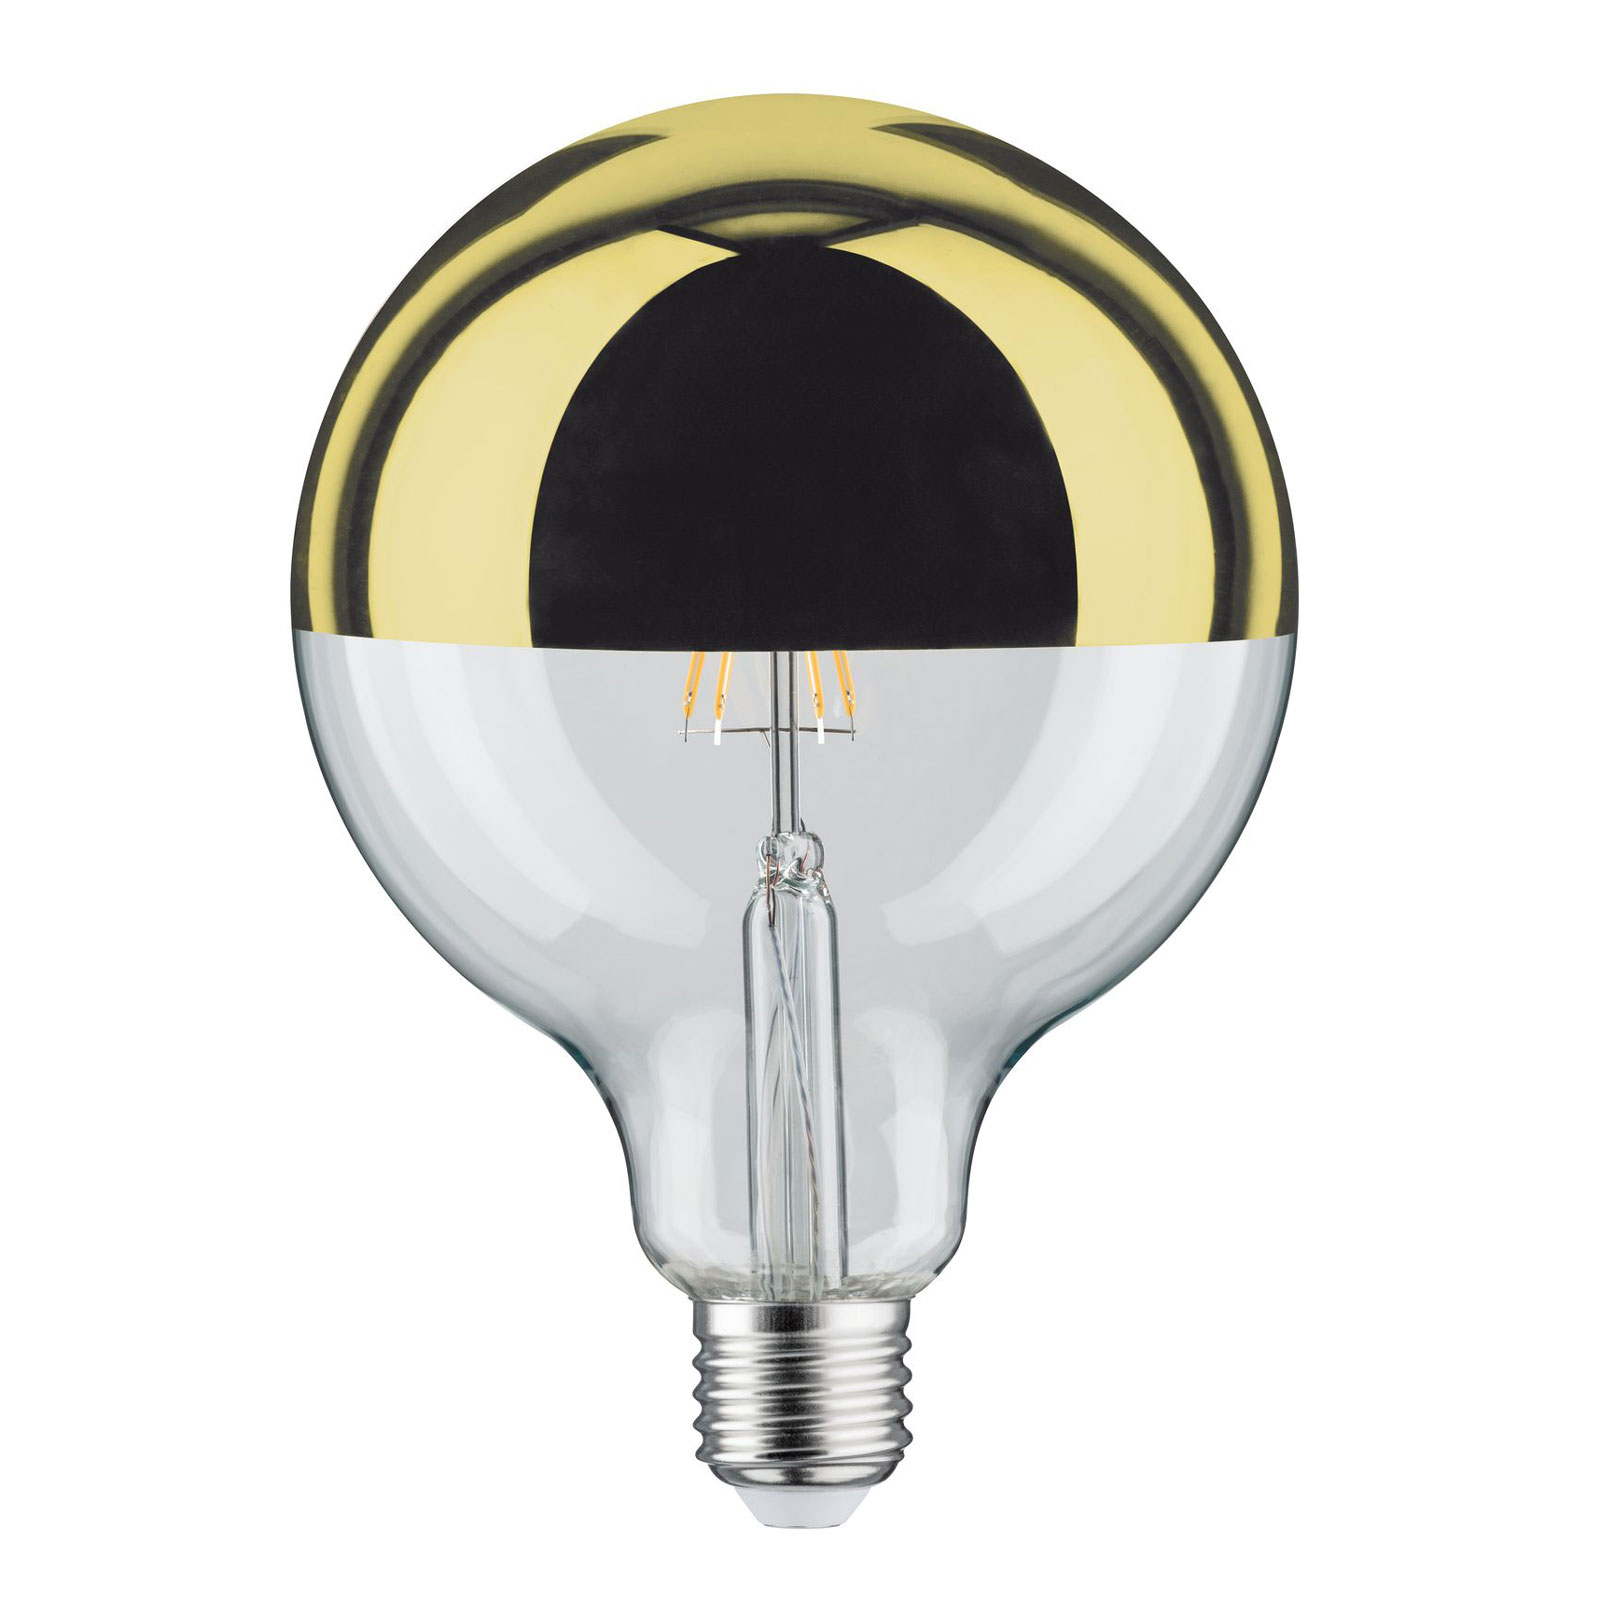 LED bulb E27 G125 827 6.5W Head mirror gold